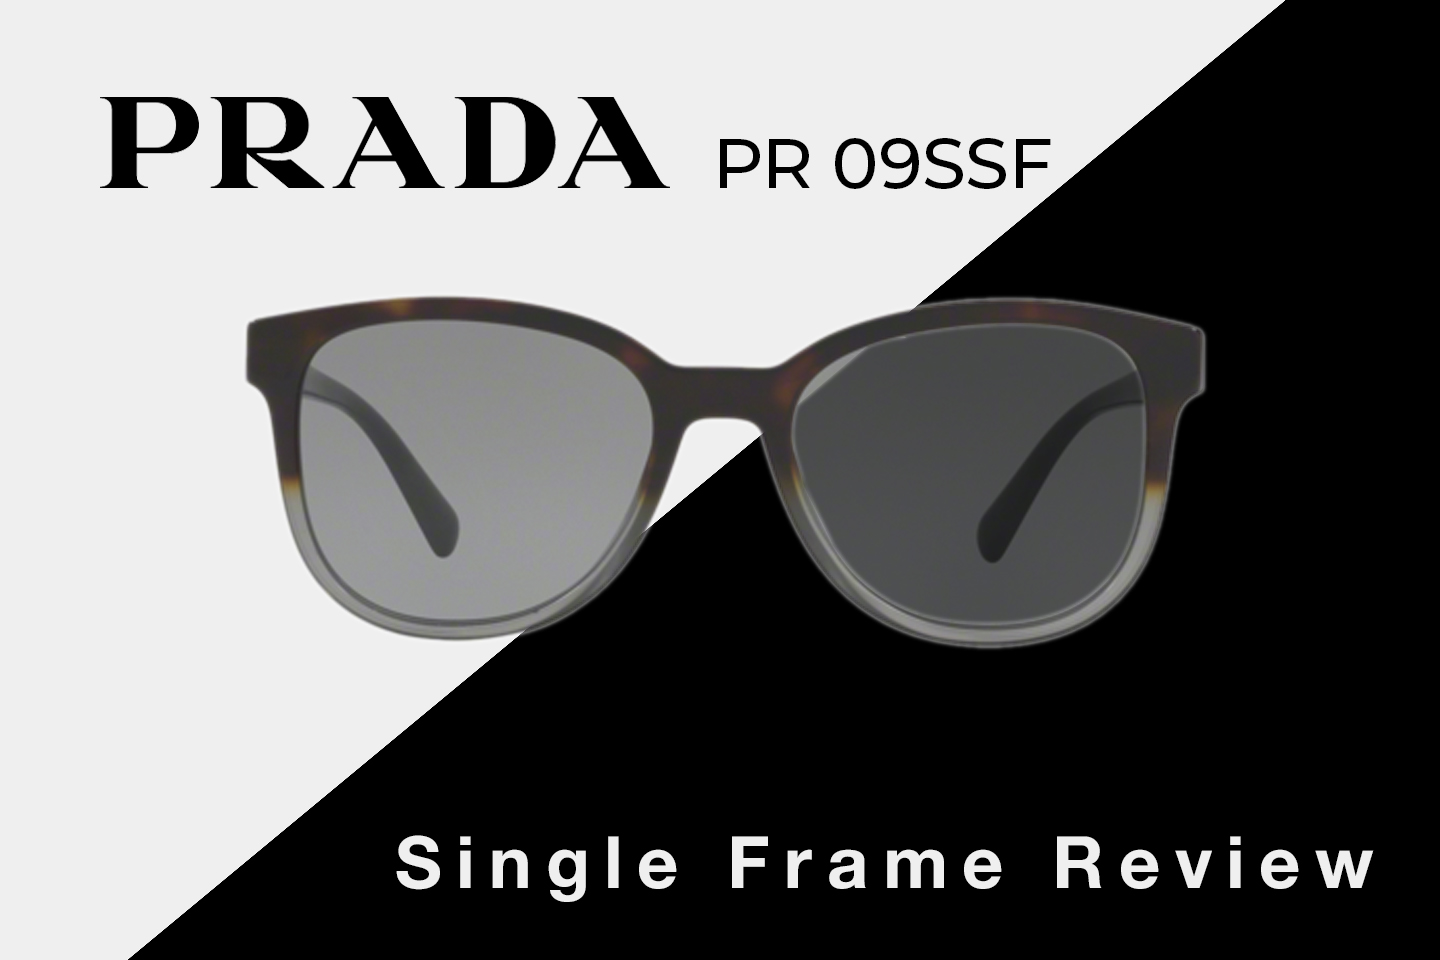 Prada PR 09SSF Sunglasses Review | Prada Women's Square Sunglasses